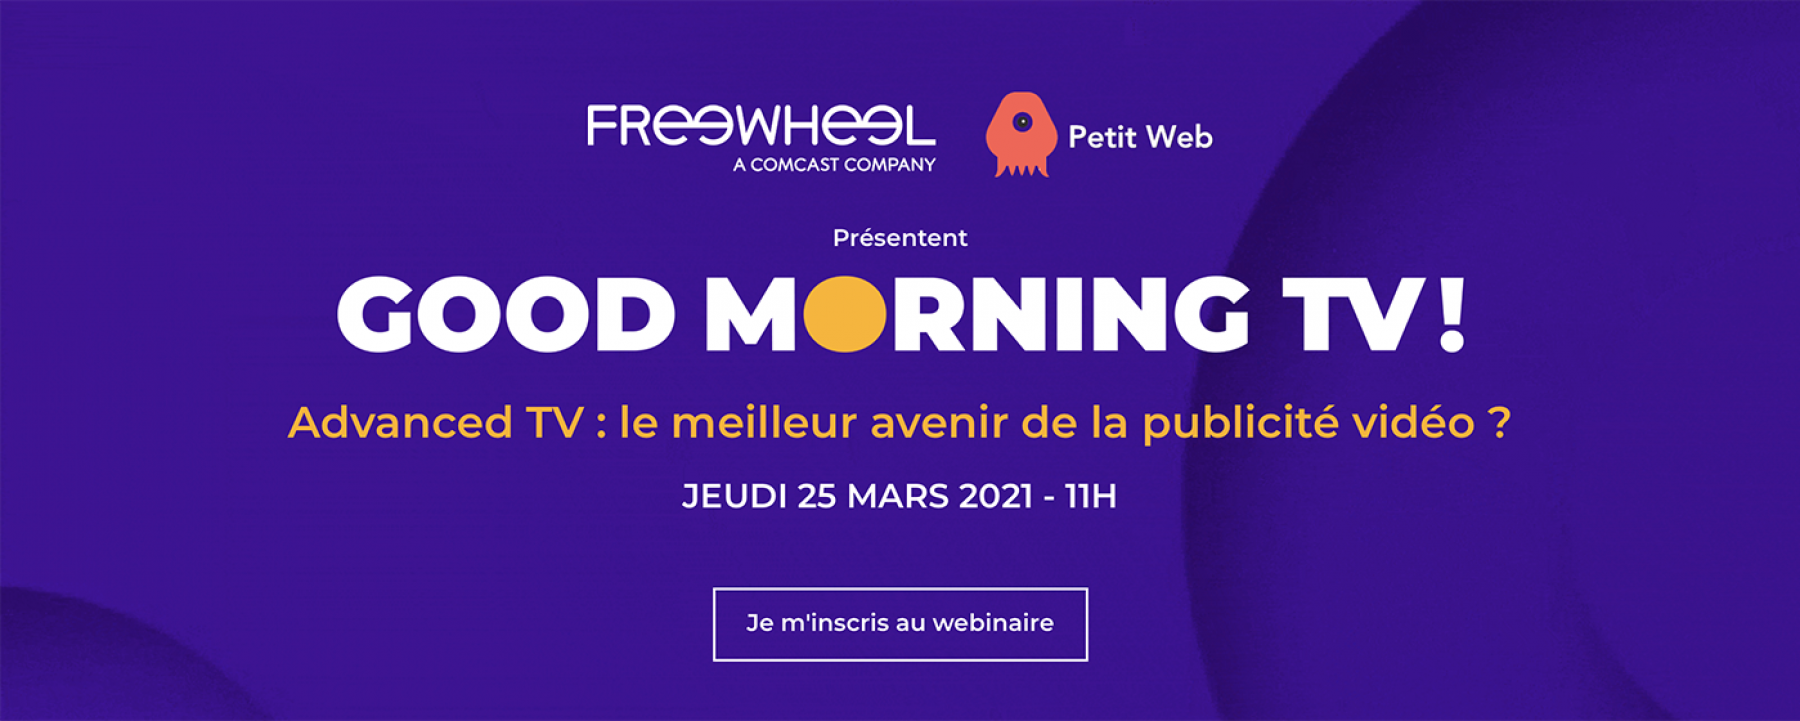 Advanced TV : le meilleur avenir de la publicité vidéo ? organisé par Freewheel et Petit Web le 25 mars 2021